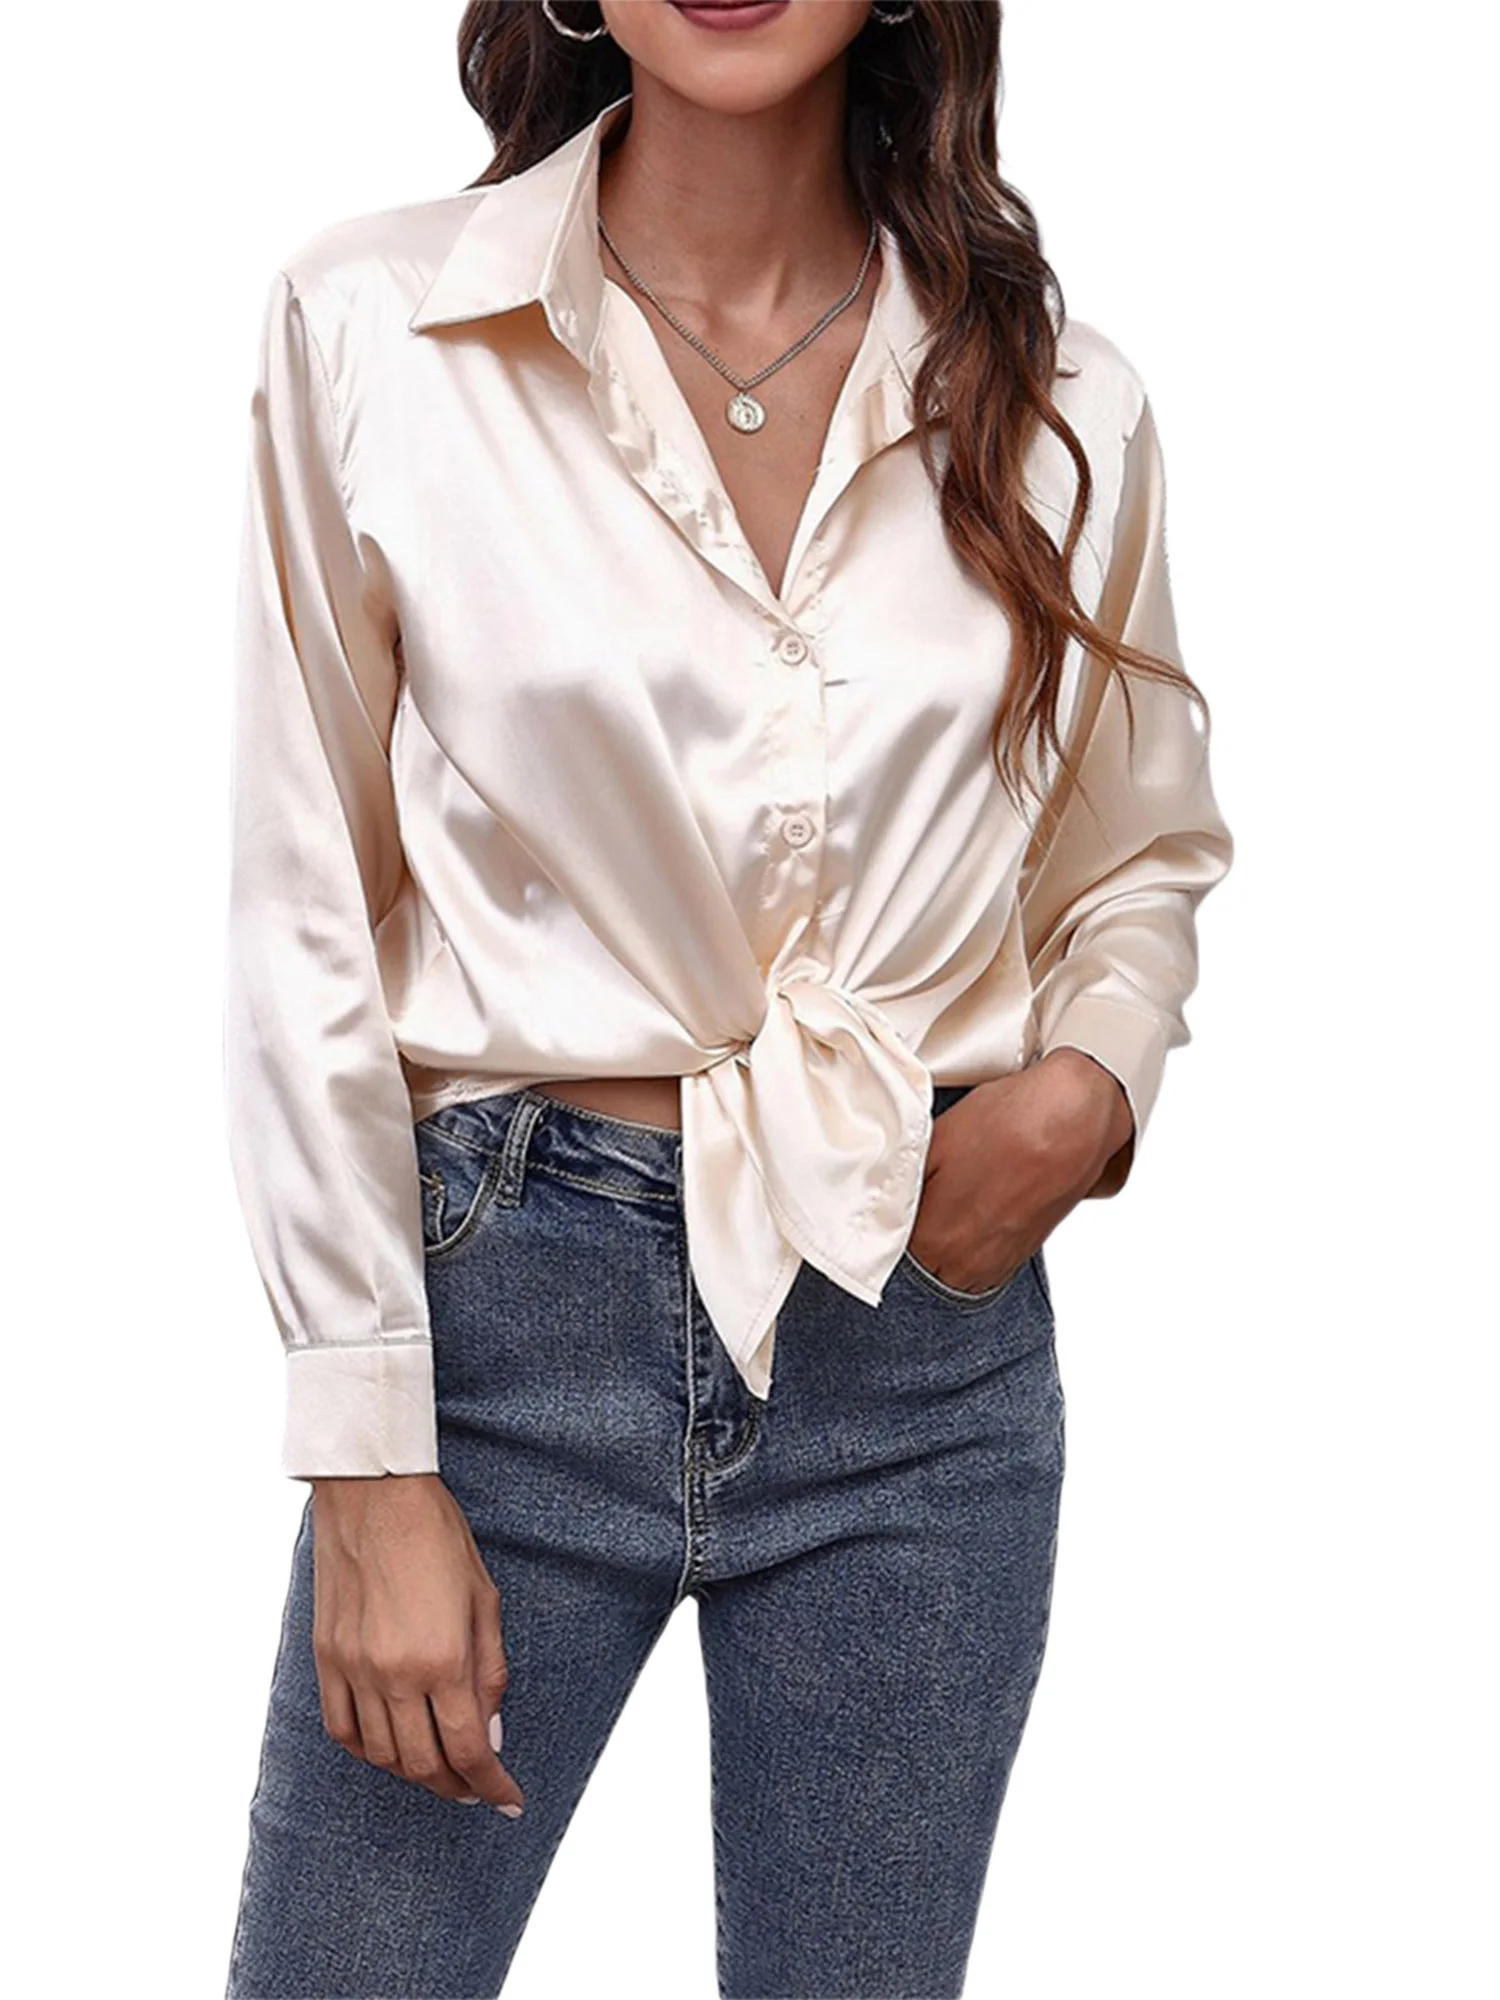 

Рубашка женская с V-образным вырезом, атласная шелковая Свободная блузка на пуговицах, с длинным рукавом, деловая повседневная одежда, топы